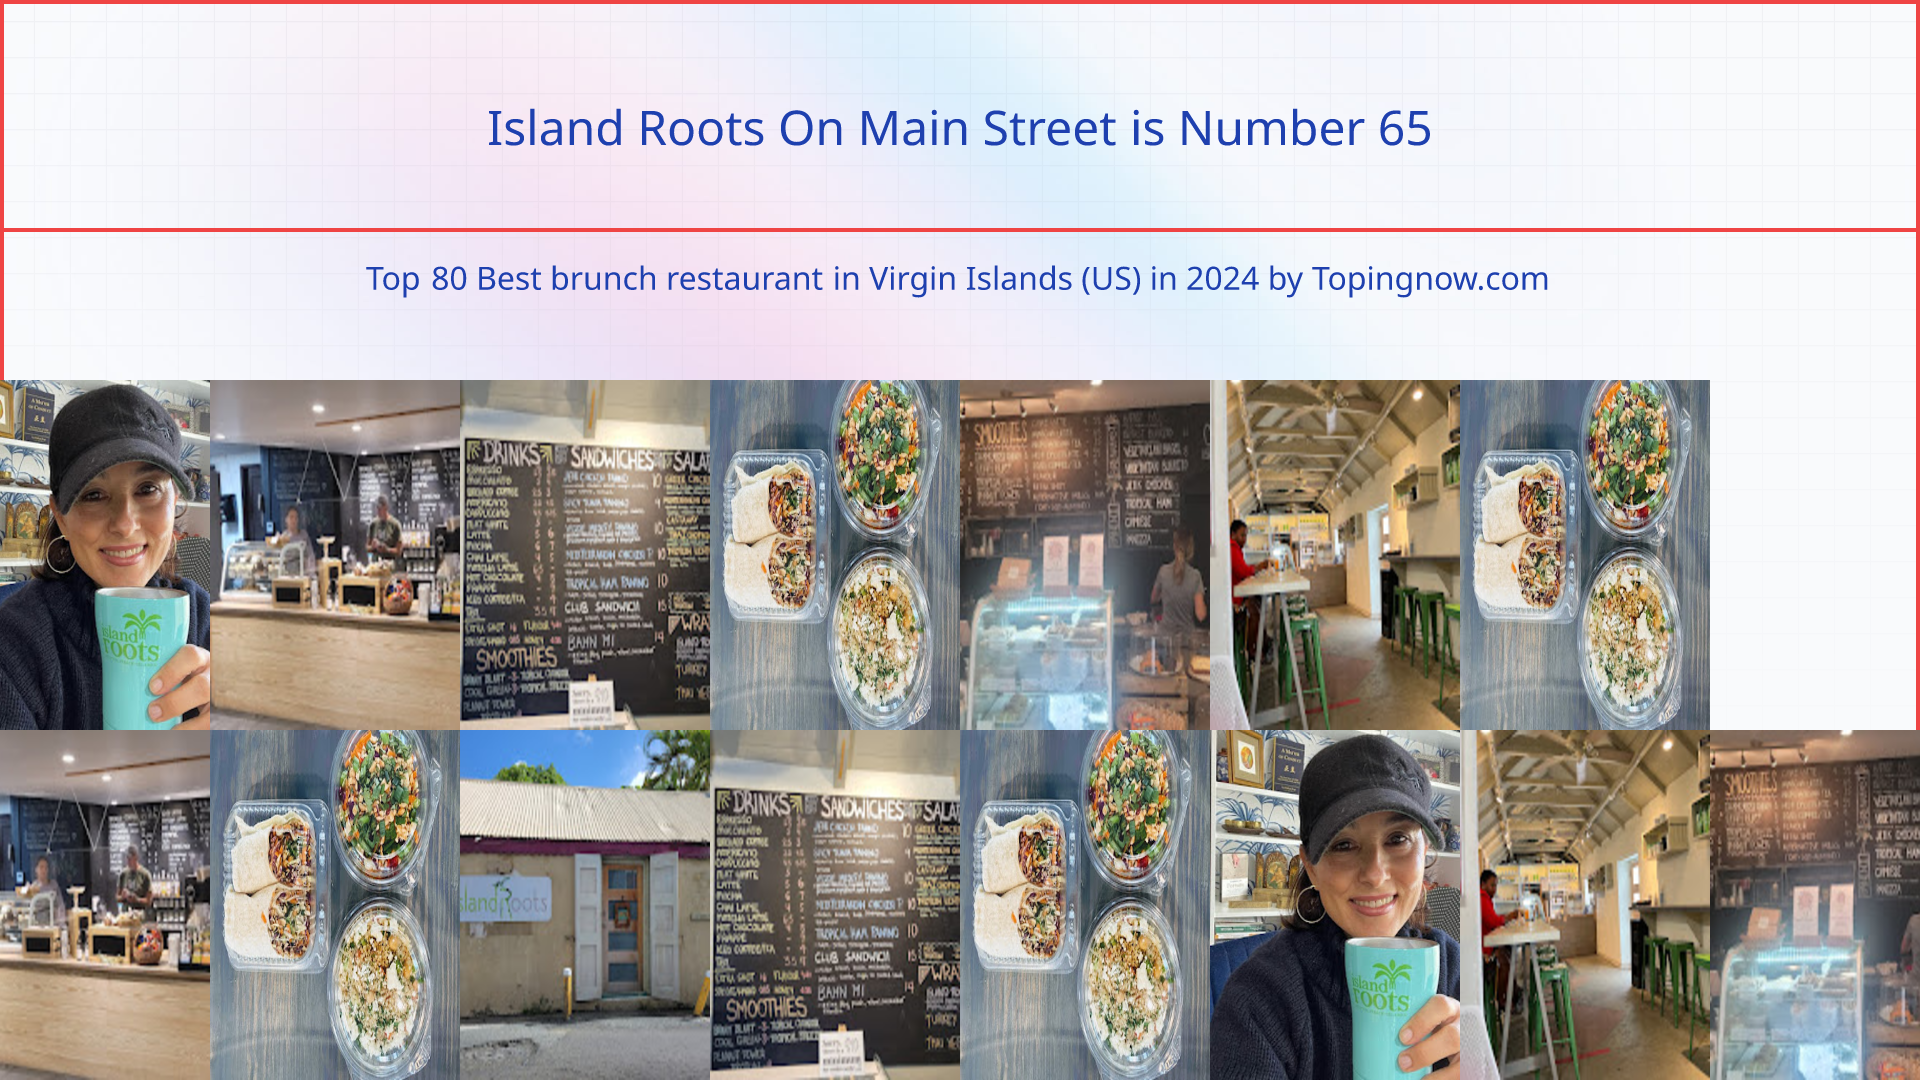 Island Roots On Main Street: Top 80 Best brunch restaurant in Virgin Islands (US) in 2024